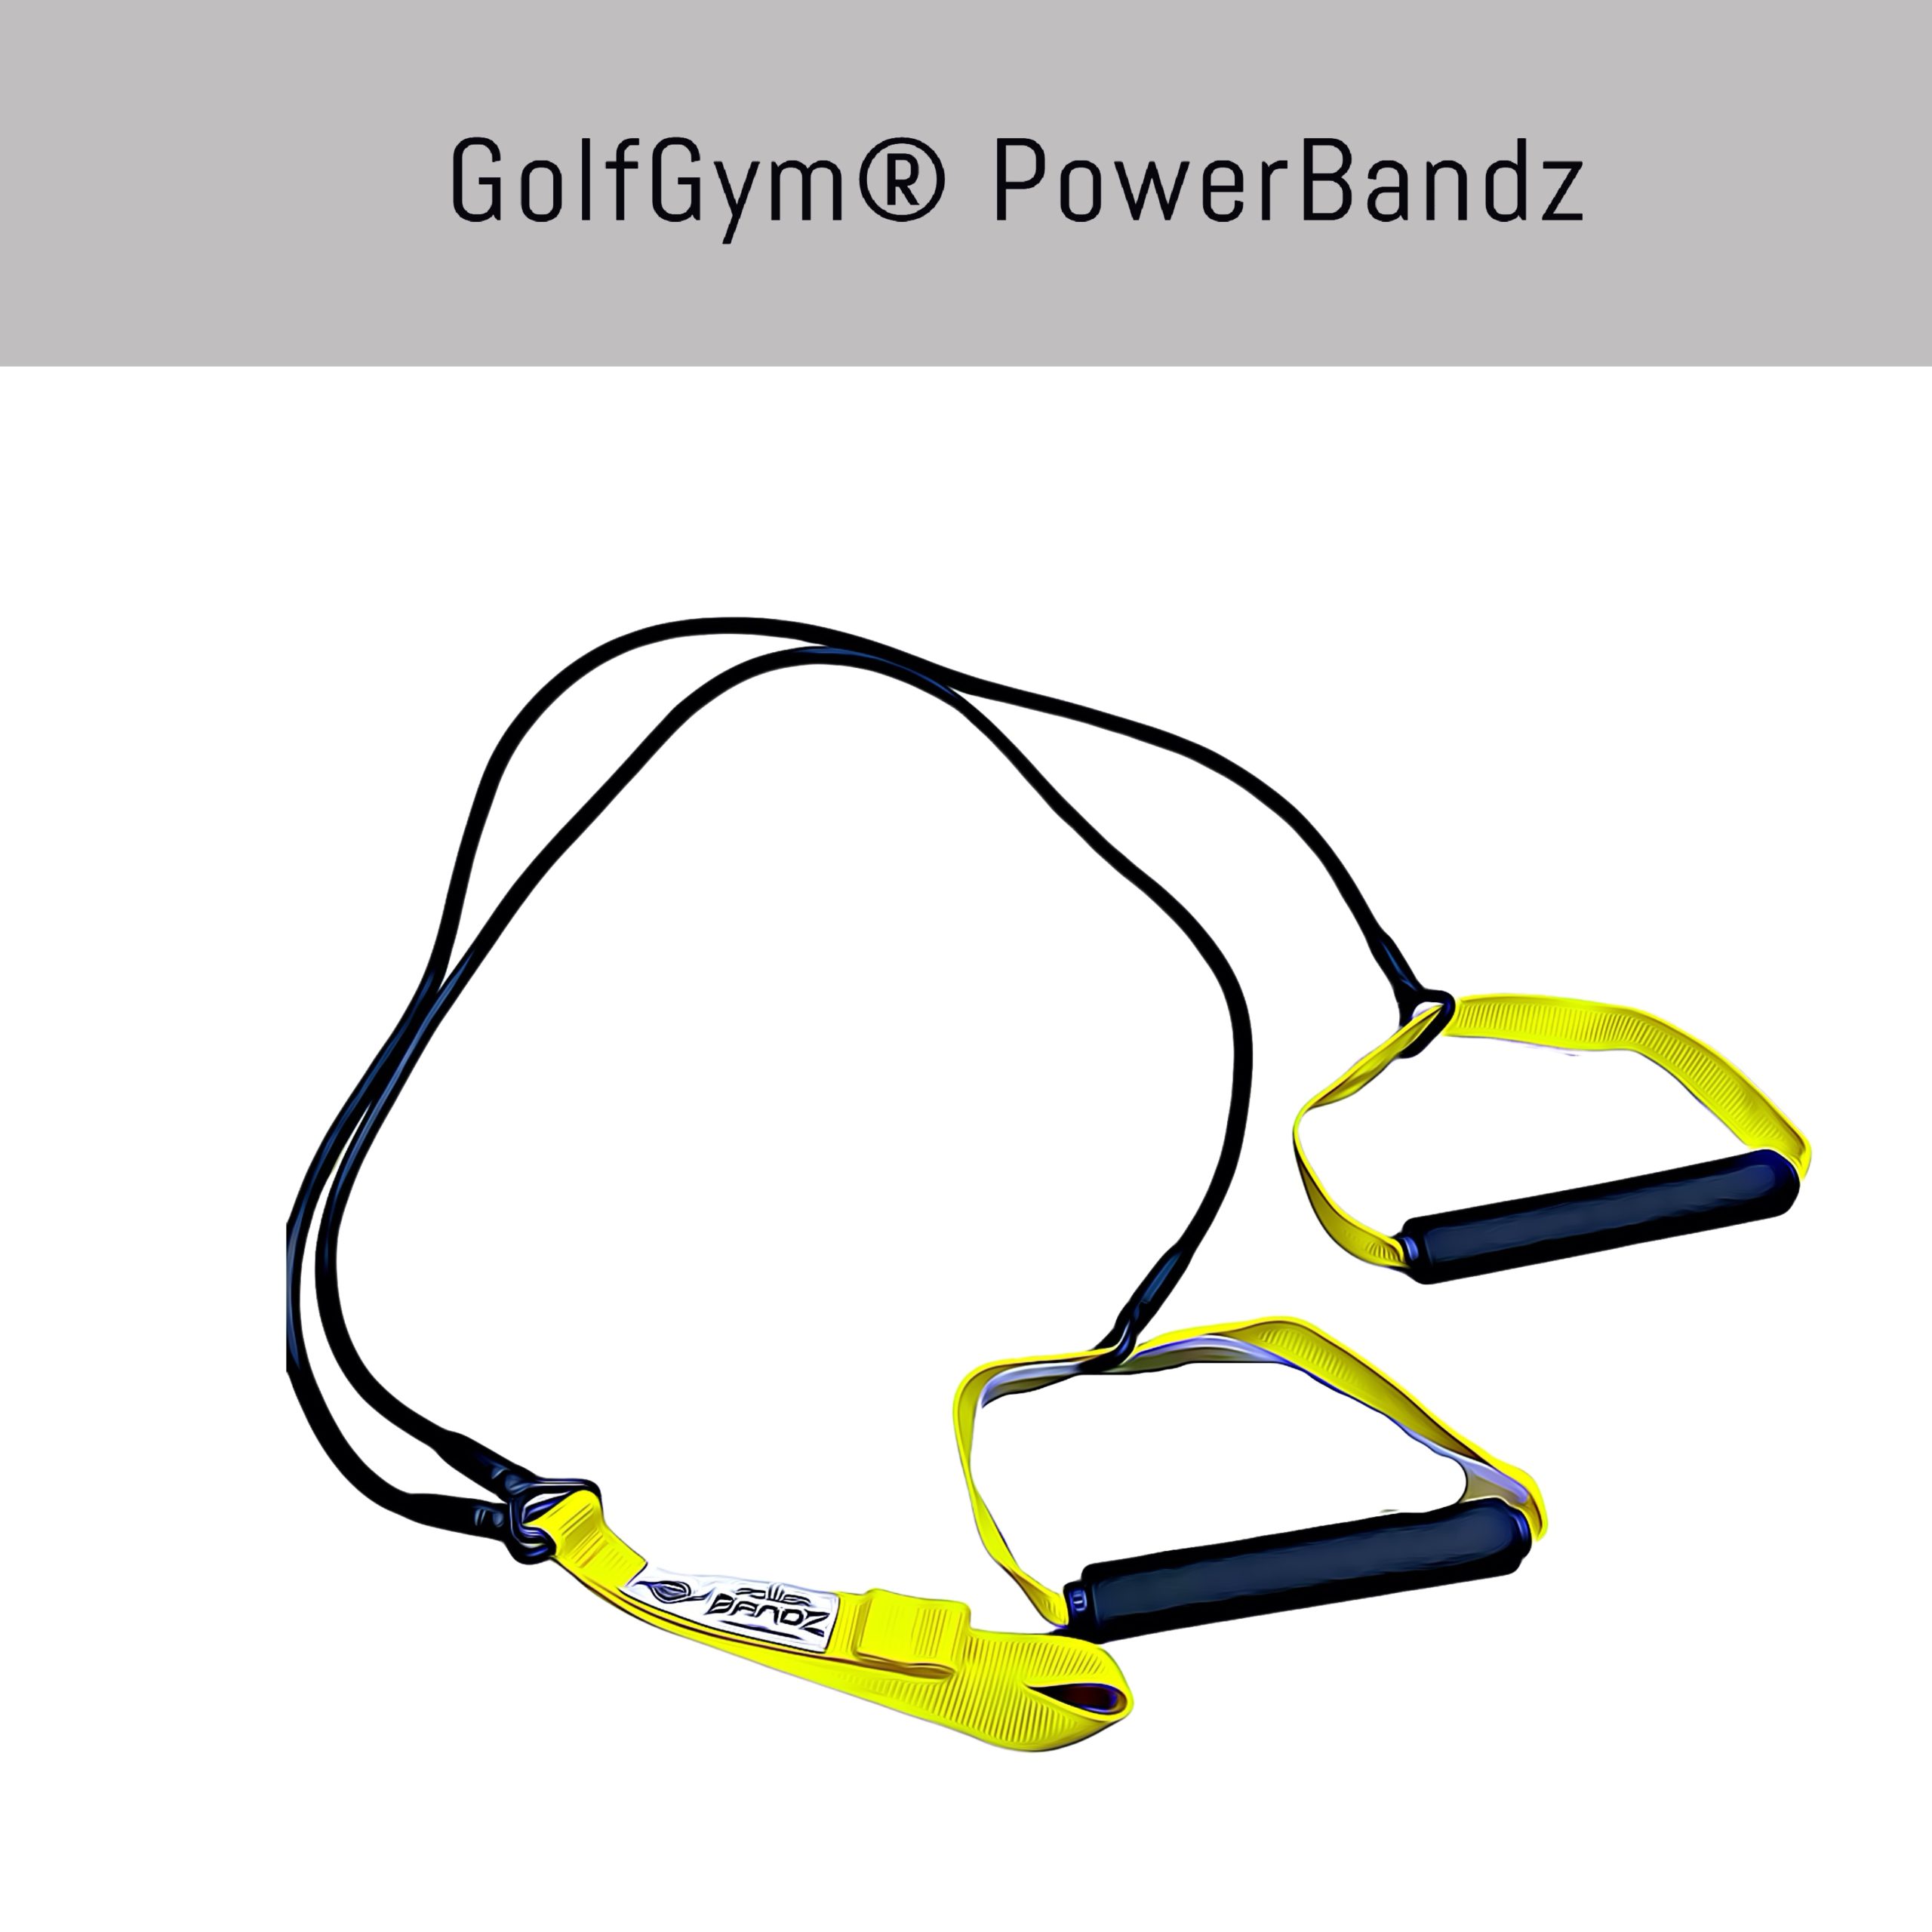 GolfGym® PowerBandz for Golfers. 